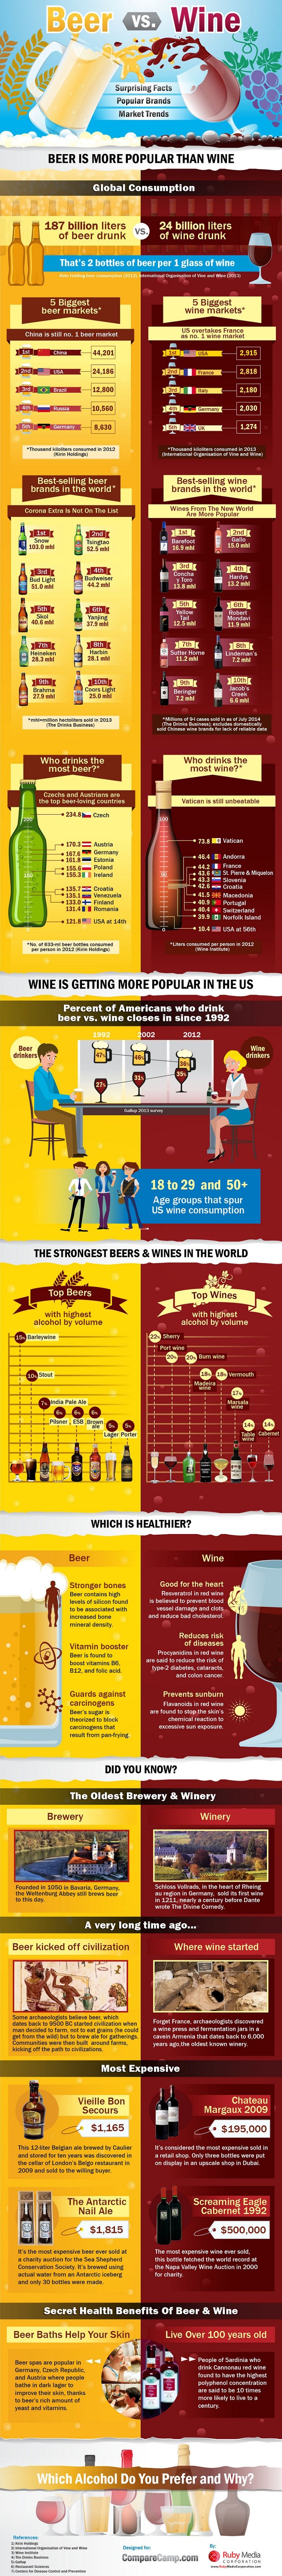 Beer vs. Wine_Infographic